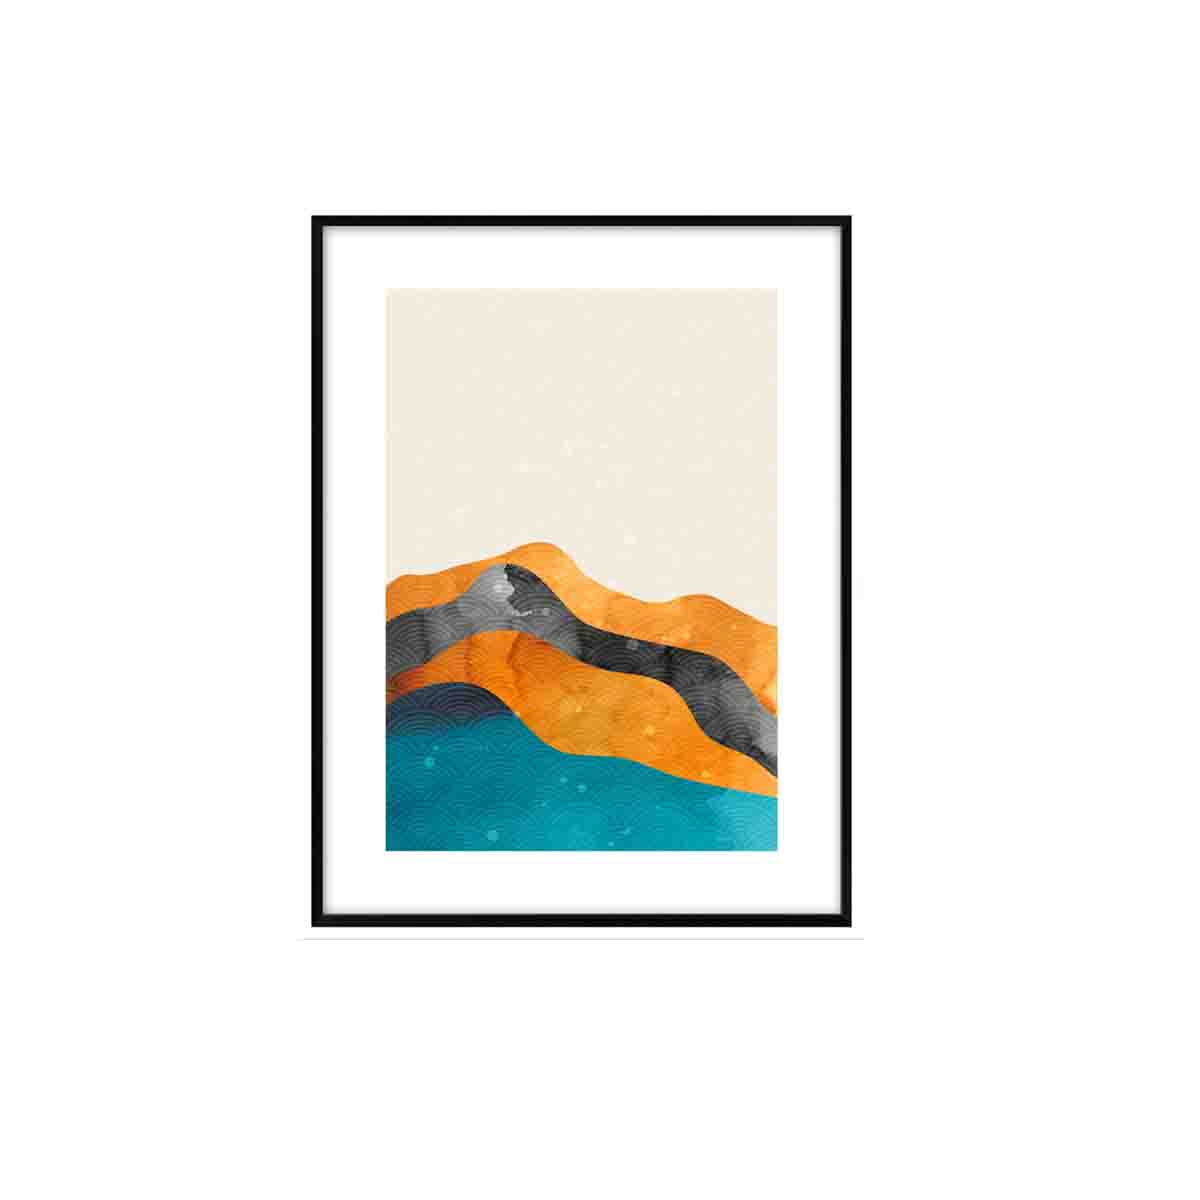 Obraz DENVER z górską abstrakcja 40,8x30,8 cm